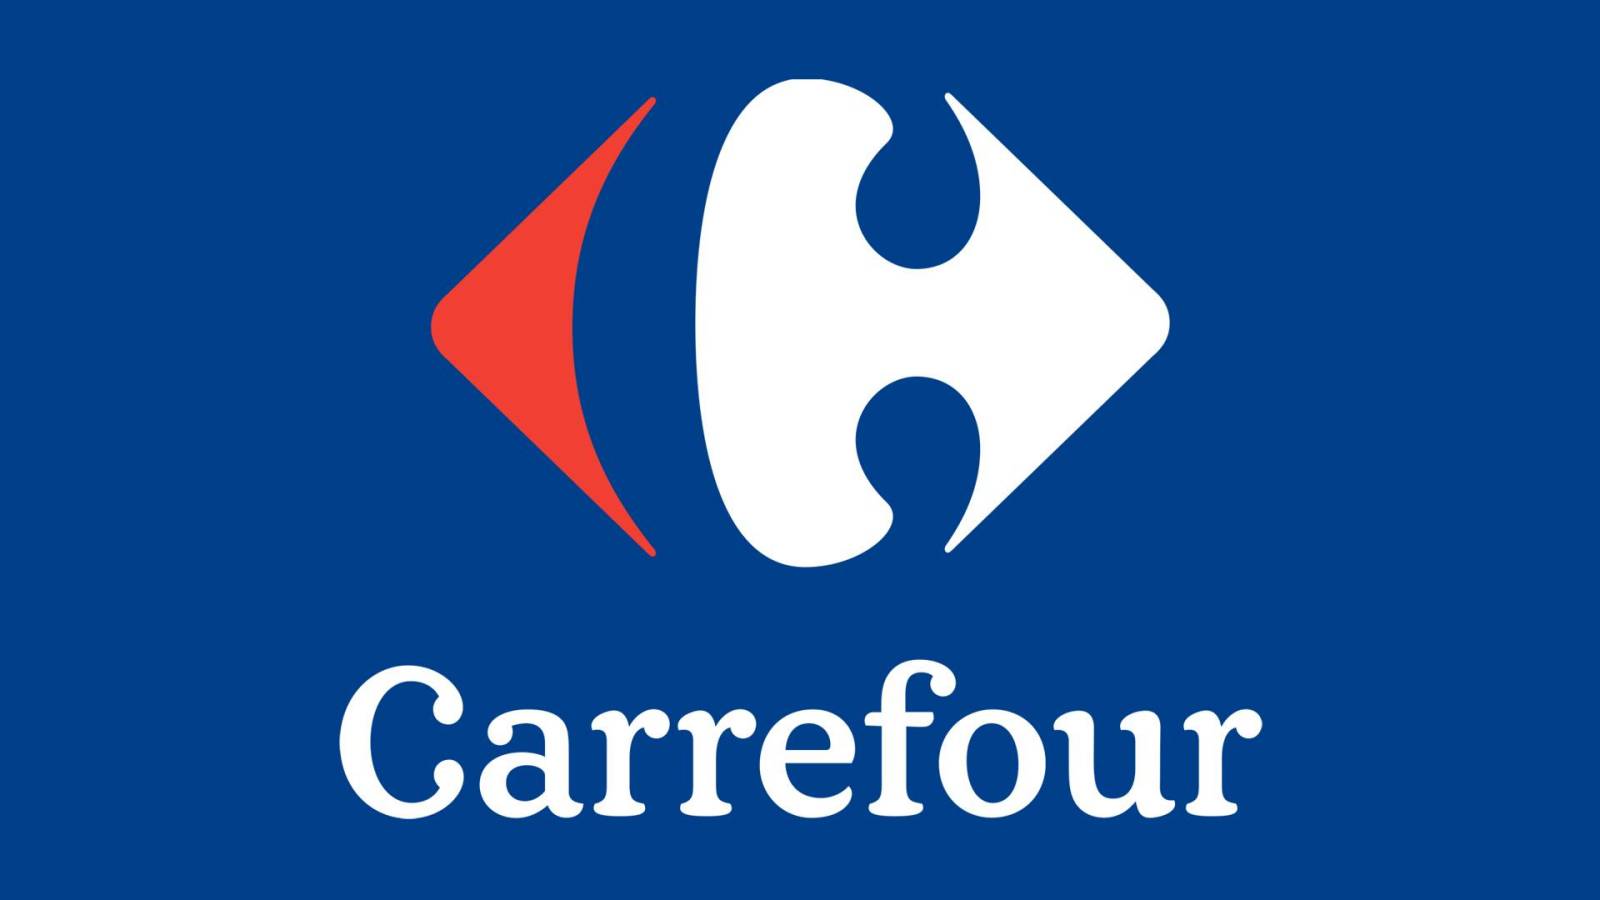 Carrefour-apparaten VERLAAGD met 50% klanten in Roemenië